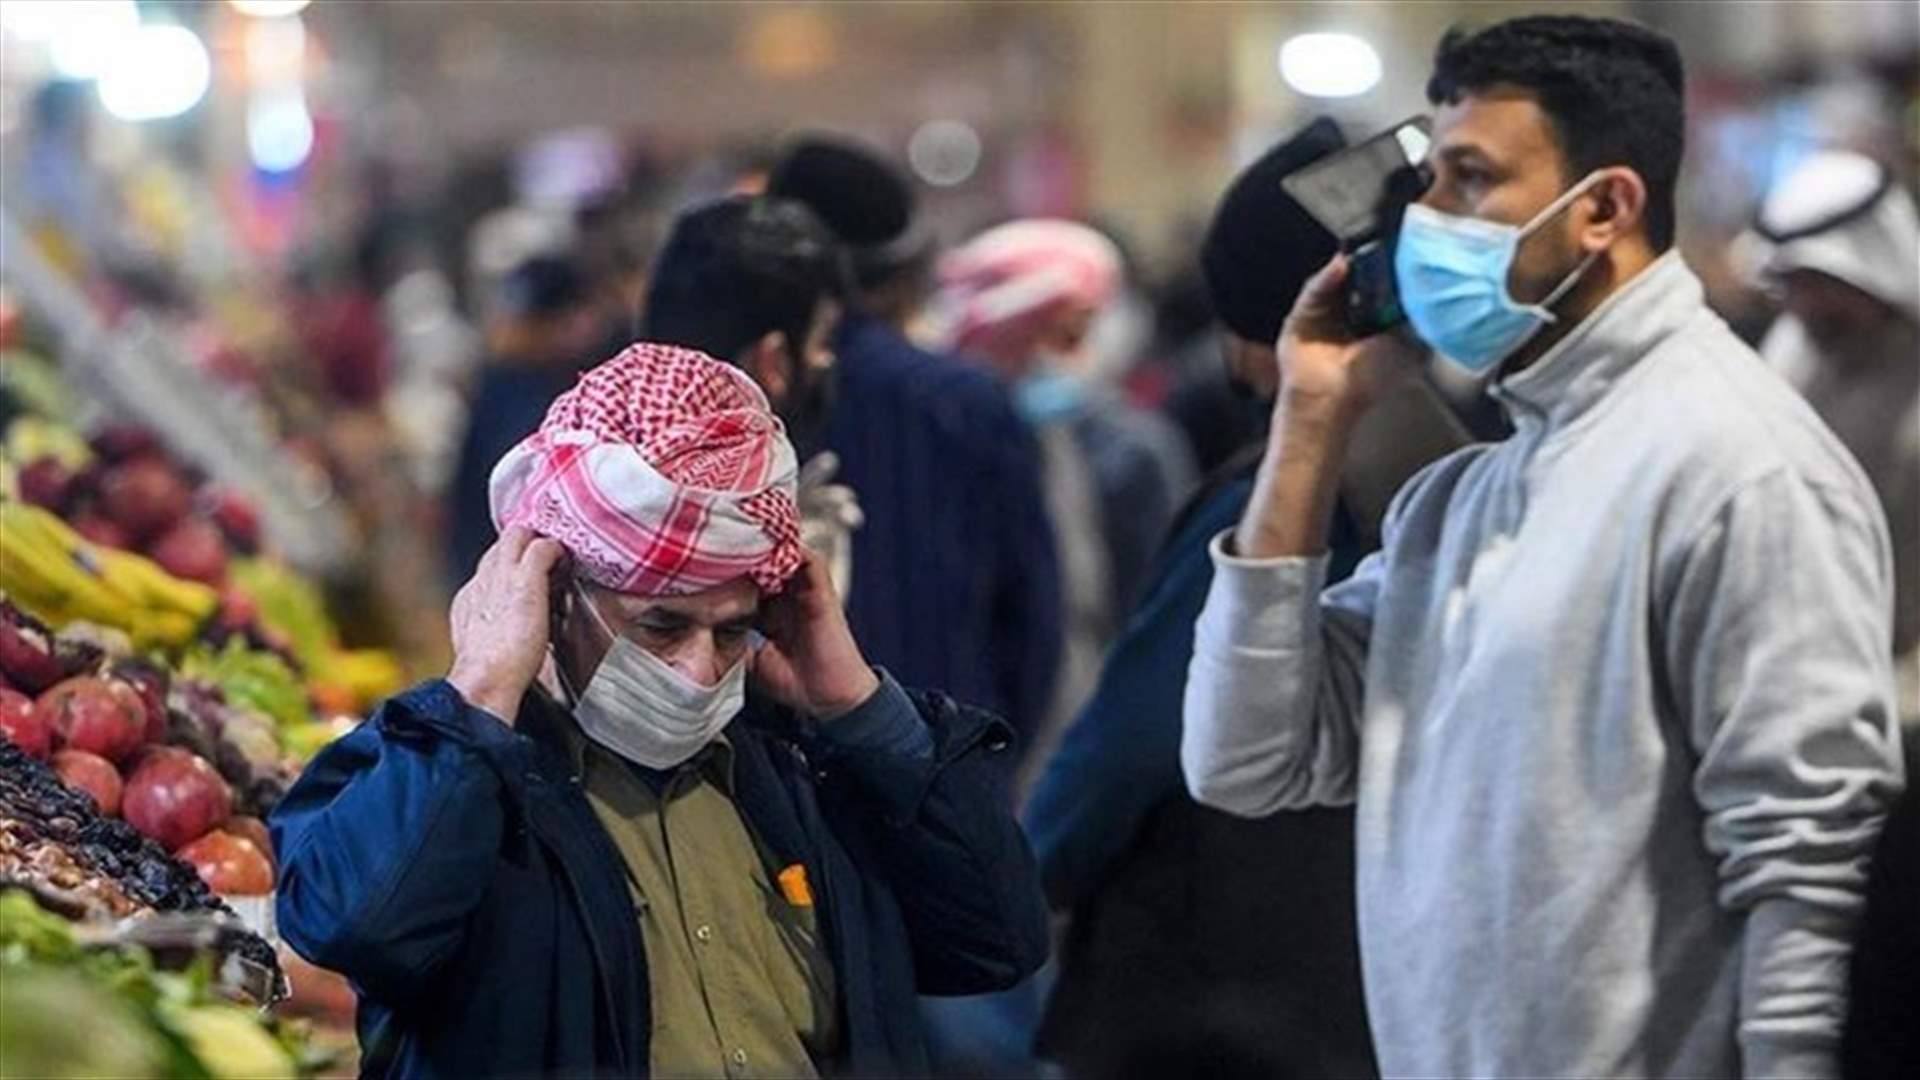 العراق سيحظر دخول الوافدين في زيارات دينية بسبب مخاوف فيروس كورونا